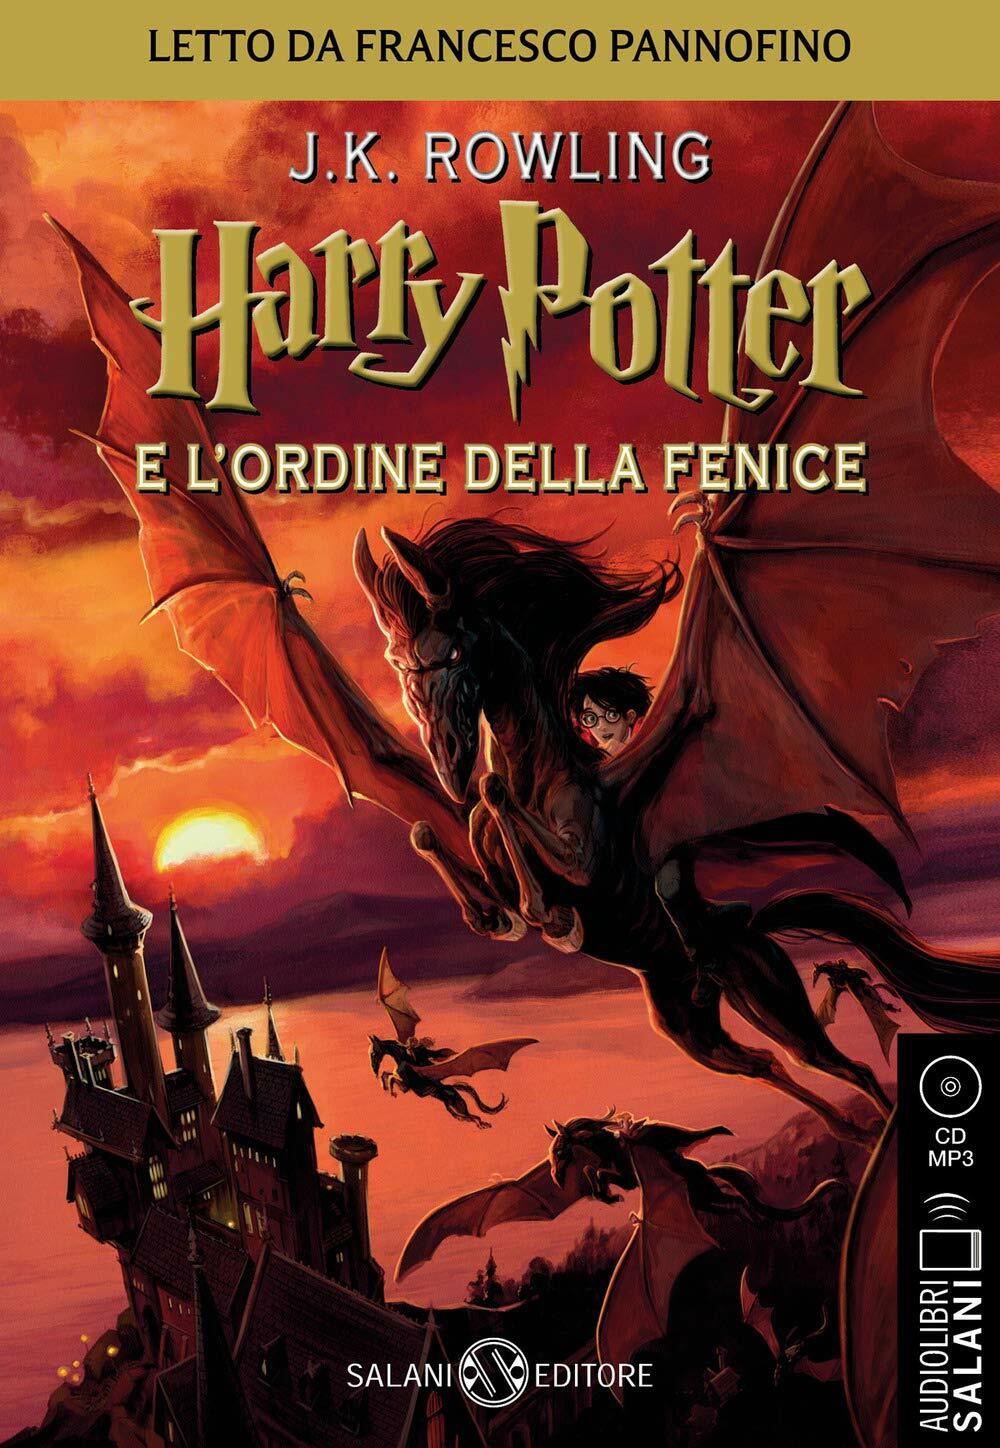 Harry Potter e lOrdine della Fenice - Audiolibro CD MP3: Vol.5 (Audio CD - Audiolibro)